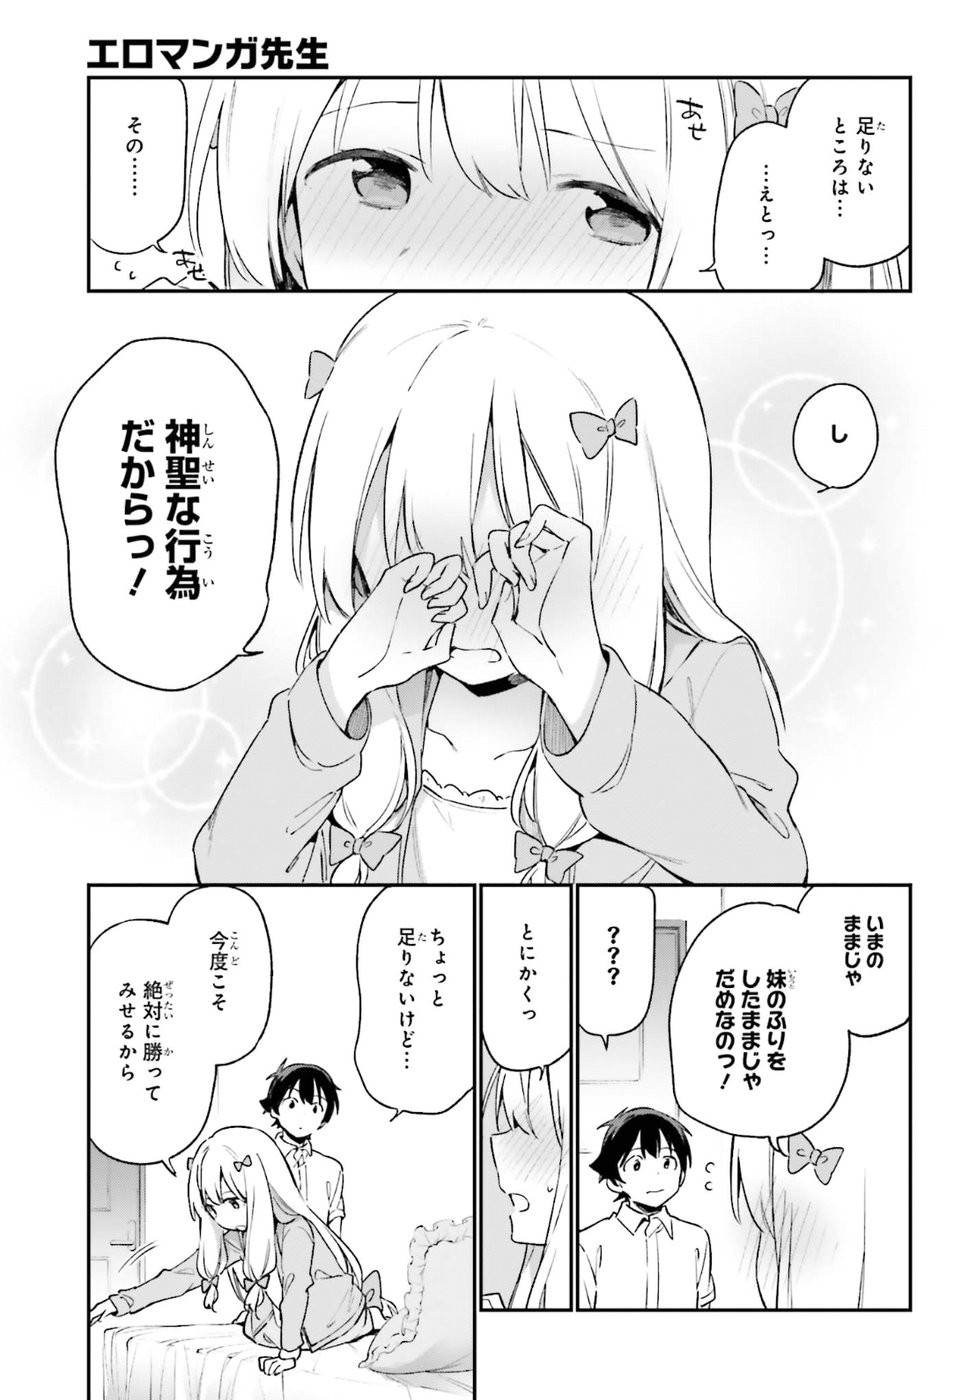 Ero Manga Sensei - Chapter 42 - Page 19